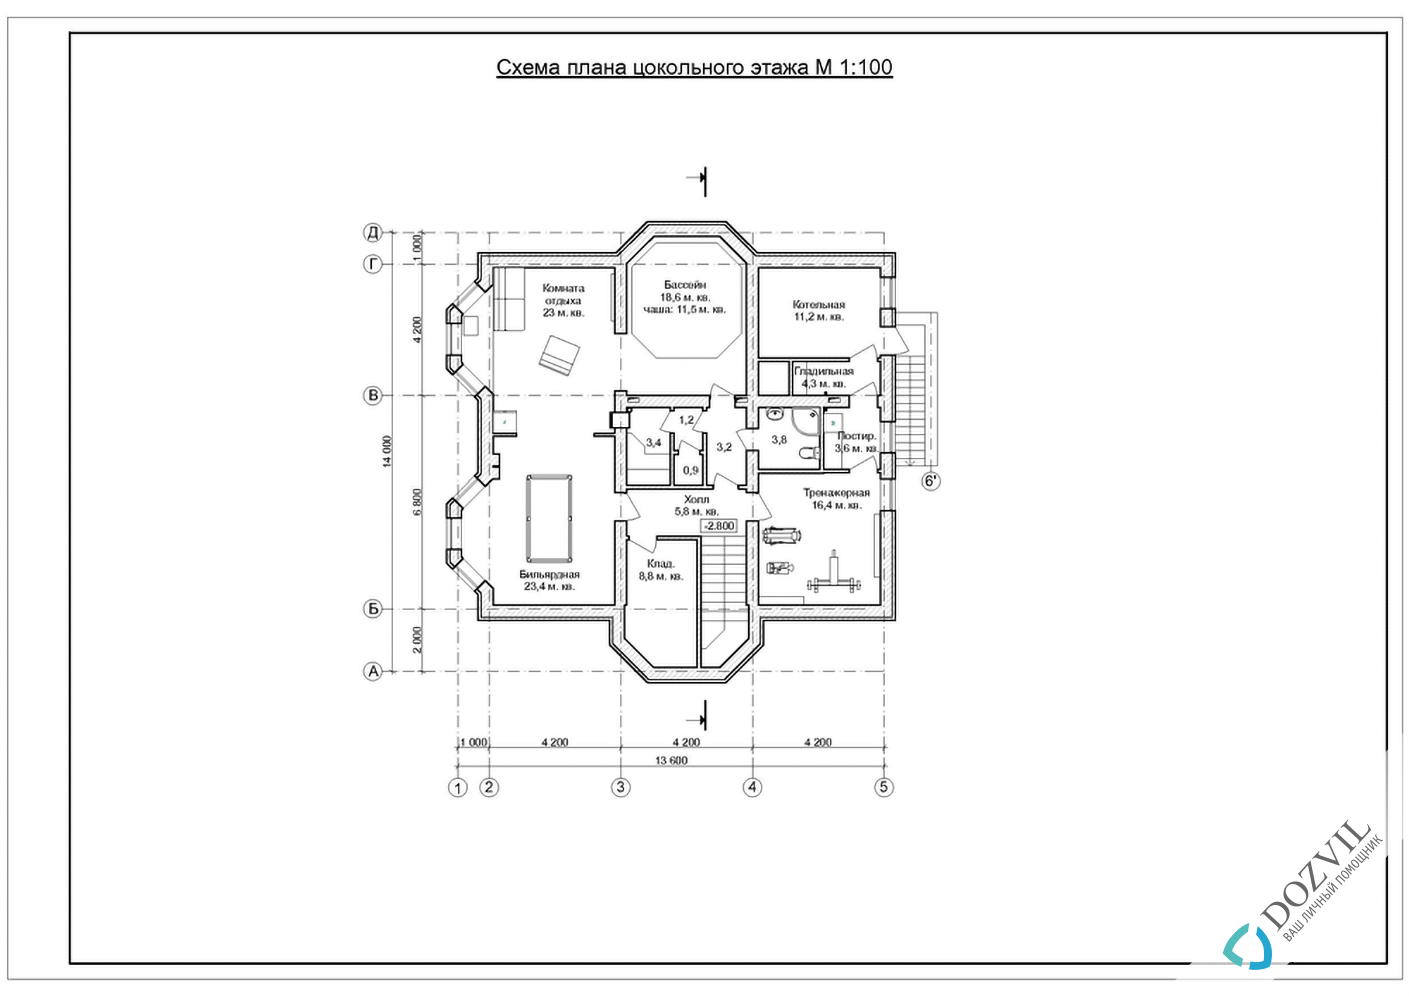 Дозвіл на будівництво будинку> Будинки з загальною площею до 500 квадратних метрів, які тільки планують будуватися або побудовані після 09 квітня 2015 року. > 2 етап - Розробка ескізу намірів будівництва.